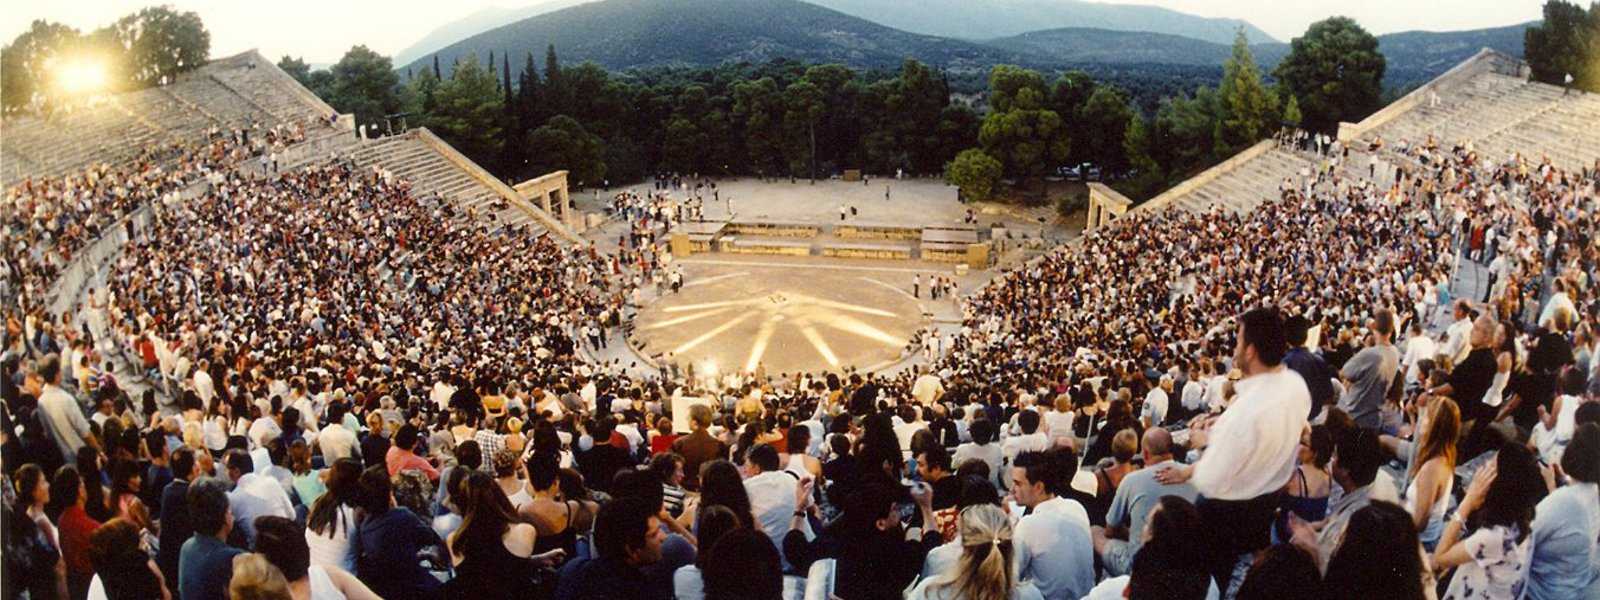  Athens & Epidaurus Festival